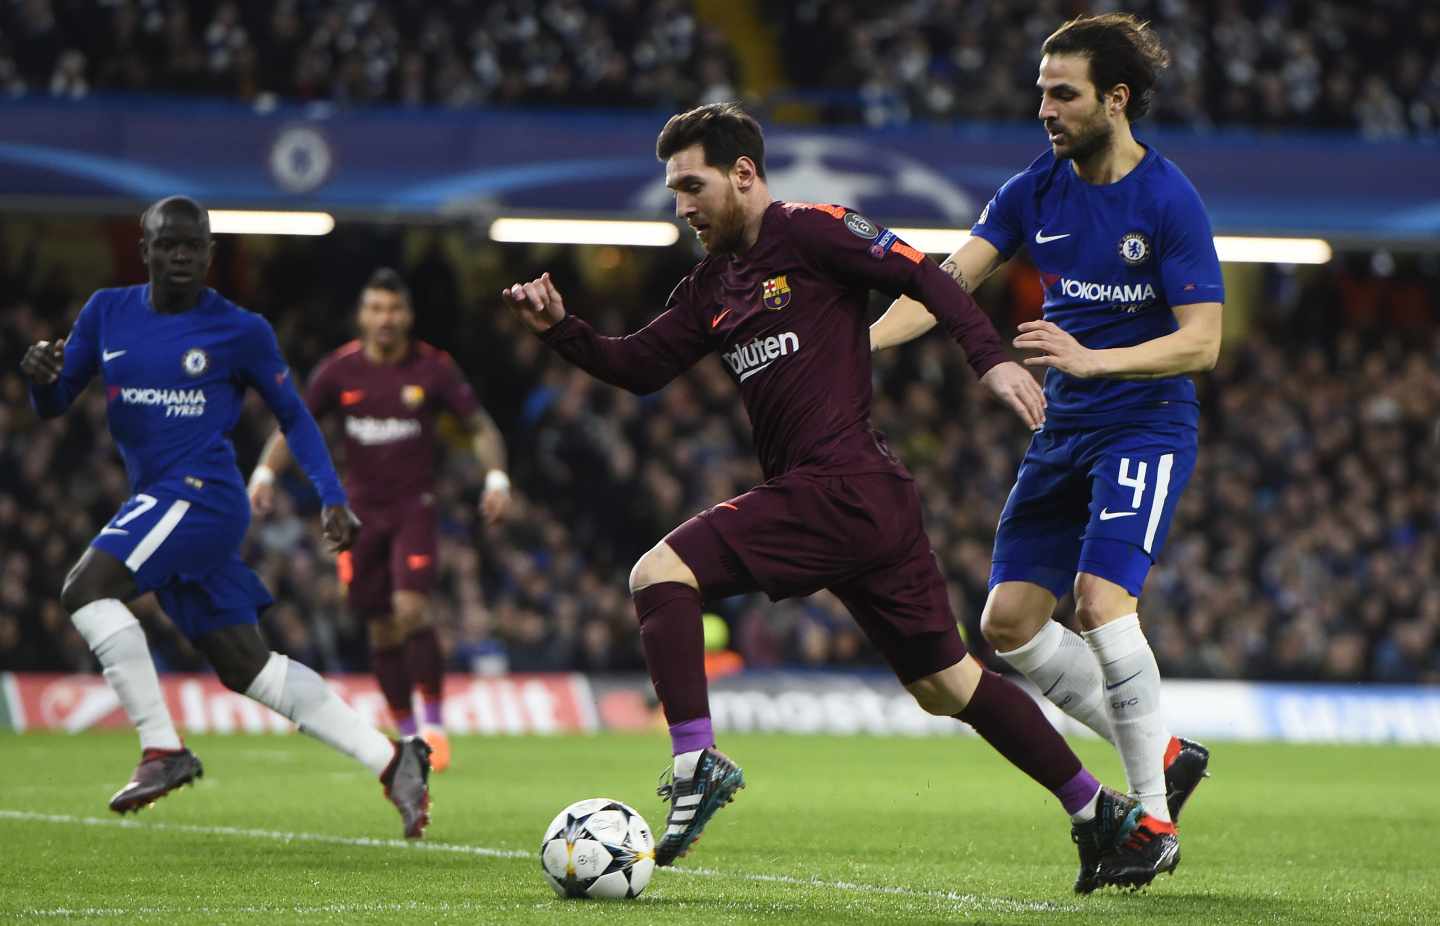 El jugador Cesc Fabregas (d) del Chelsea disputa un balón con el jugador Lionel Messi (c) del Barcelona hoy, martes 20 de febrero de 2018, durante su juego de la Liga de Campeones de la UEFA, entre el Chelsea FC y el FC Barcelona, en el estadio de Stamford Bridge de Londres (R.Unido).